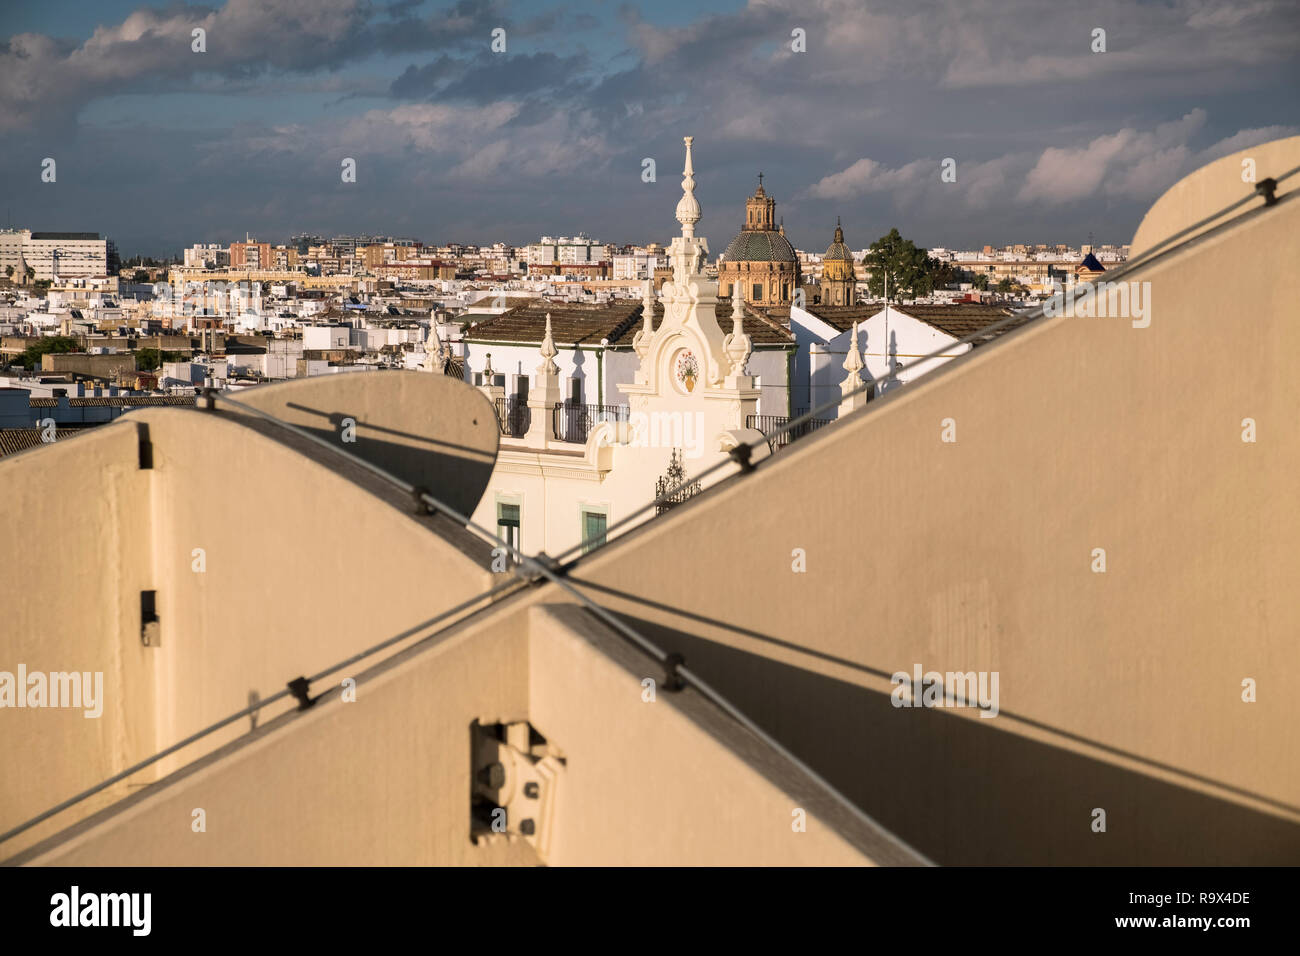 Le Metropol Parasol dans le vieux quartier historique de Séville, en Espagne, est une grande structure en forme de champignon en bois populaires auprès des touristes à la ville. Banque D'Images